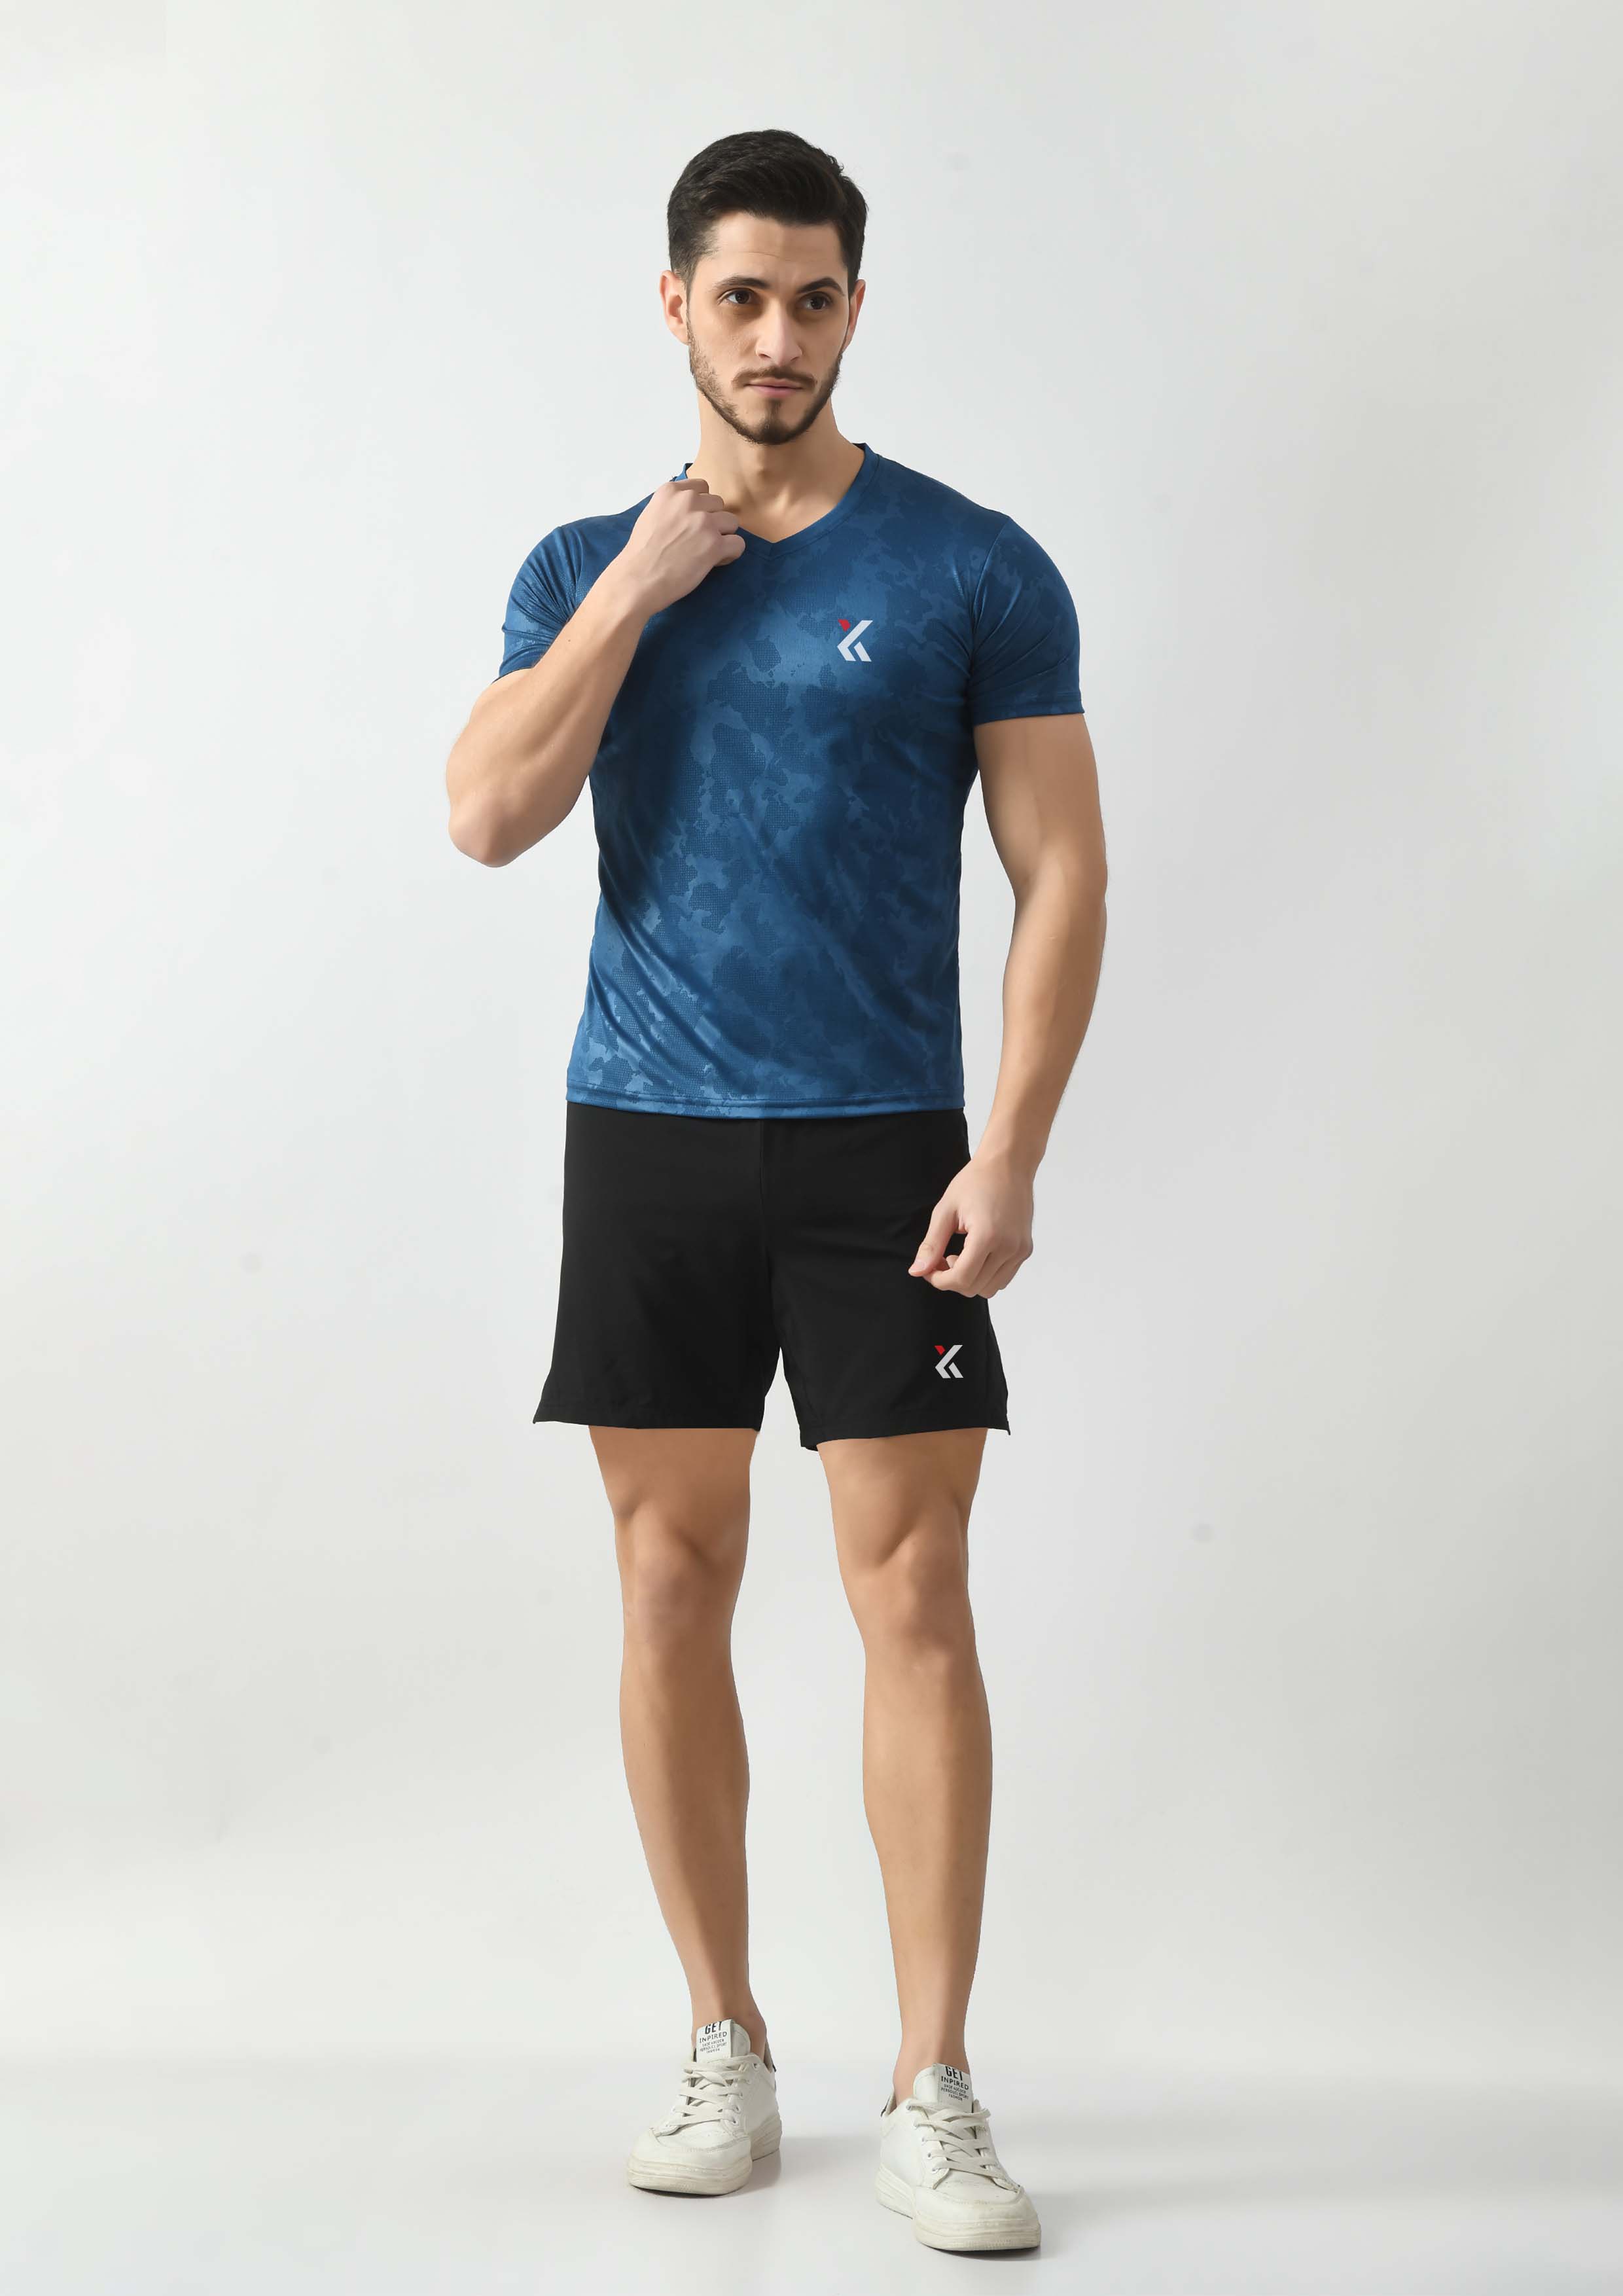 Teal Blue Gym Y-Shirt for Men